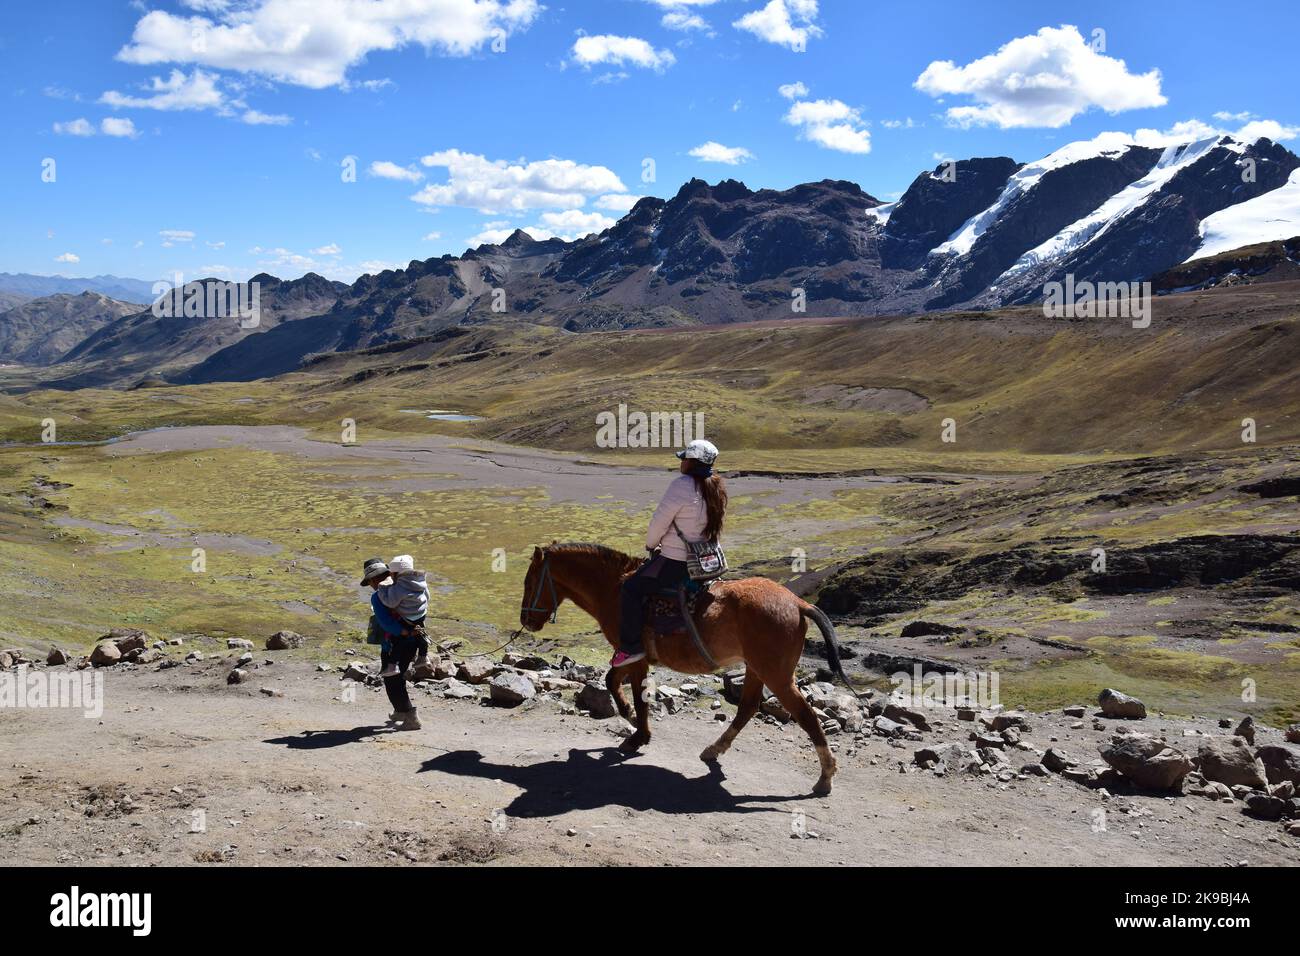 Einheimische in traditioneller Kleidung, die mit seinem Pferd den Hügel in der Nähe der Bergkette Vilcanota in der Region Cusco, Peru, hinaufgehen Stockfoto